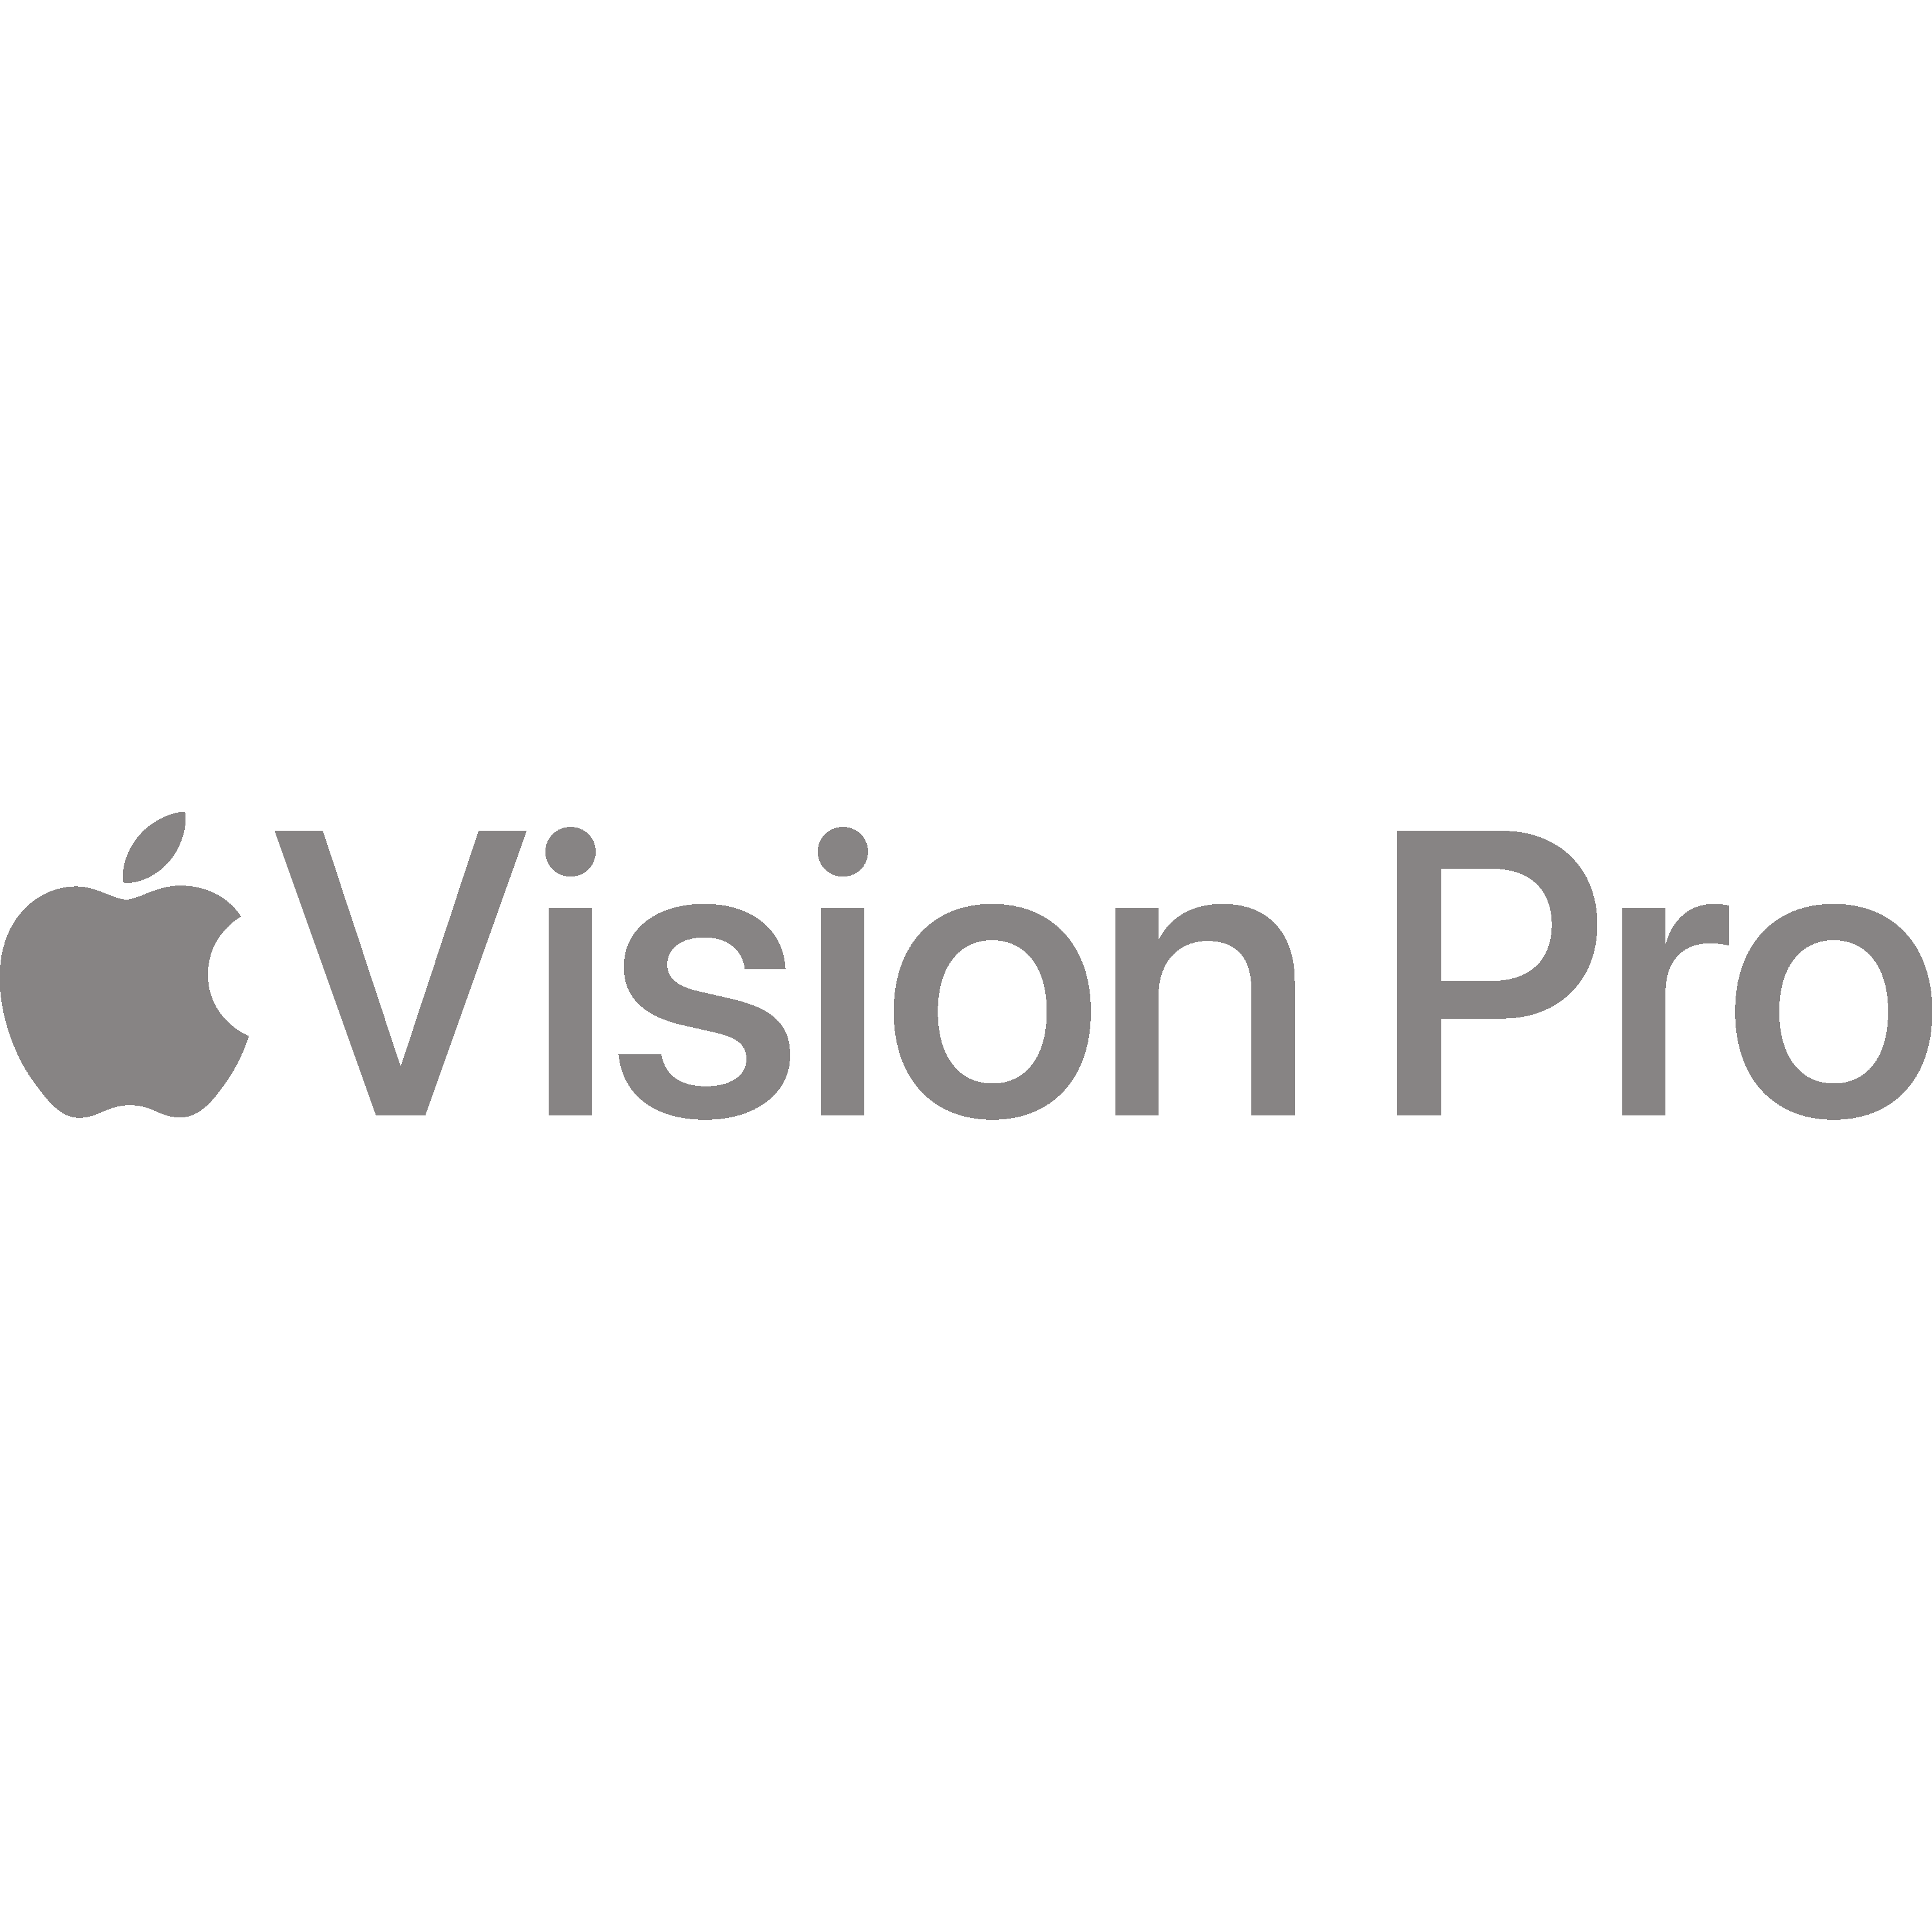 Apple Vision Pro Logo Transparent Picture